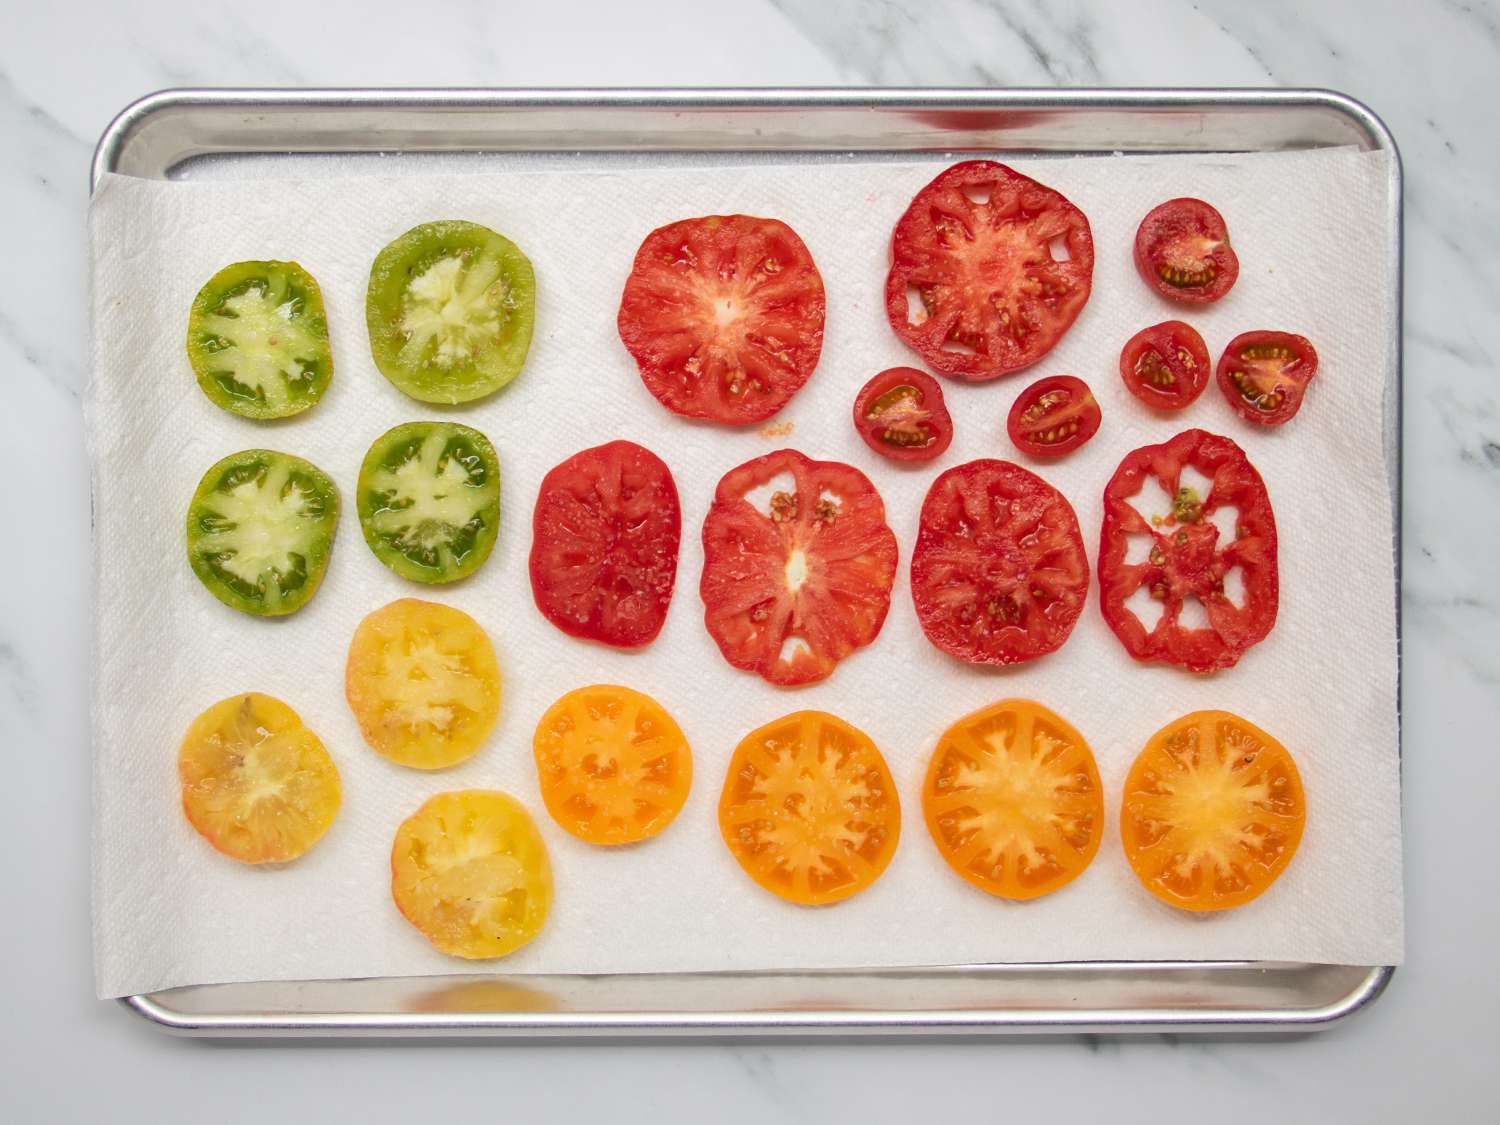 将不同种类的西红柿切片放在有纸巾衬里的烤盘上